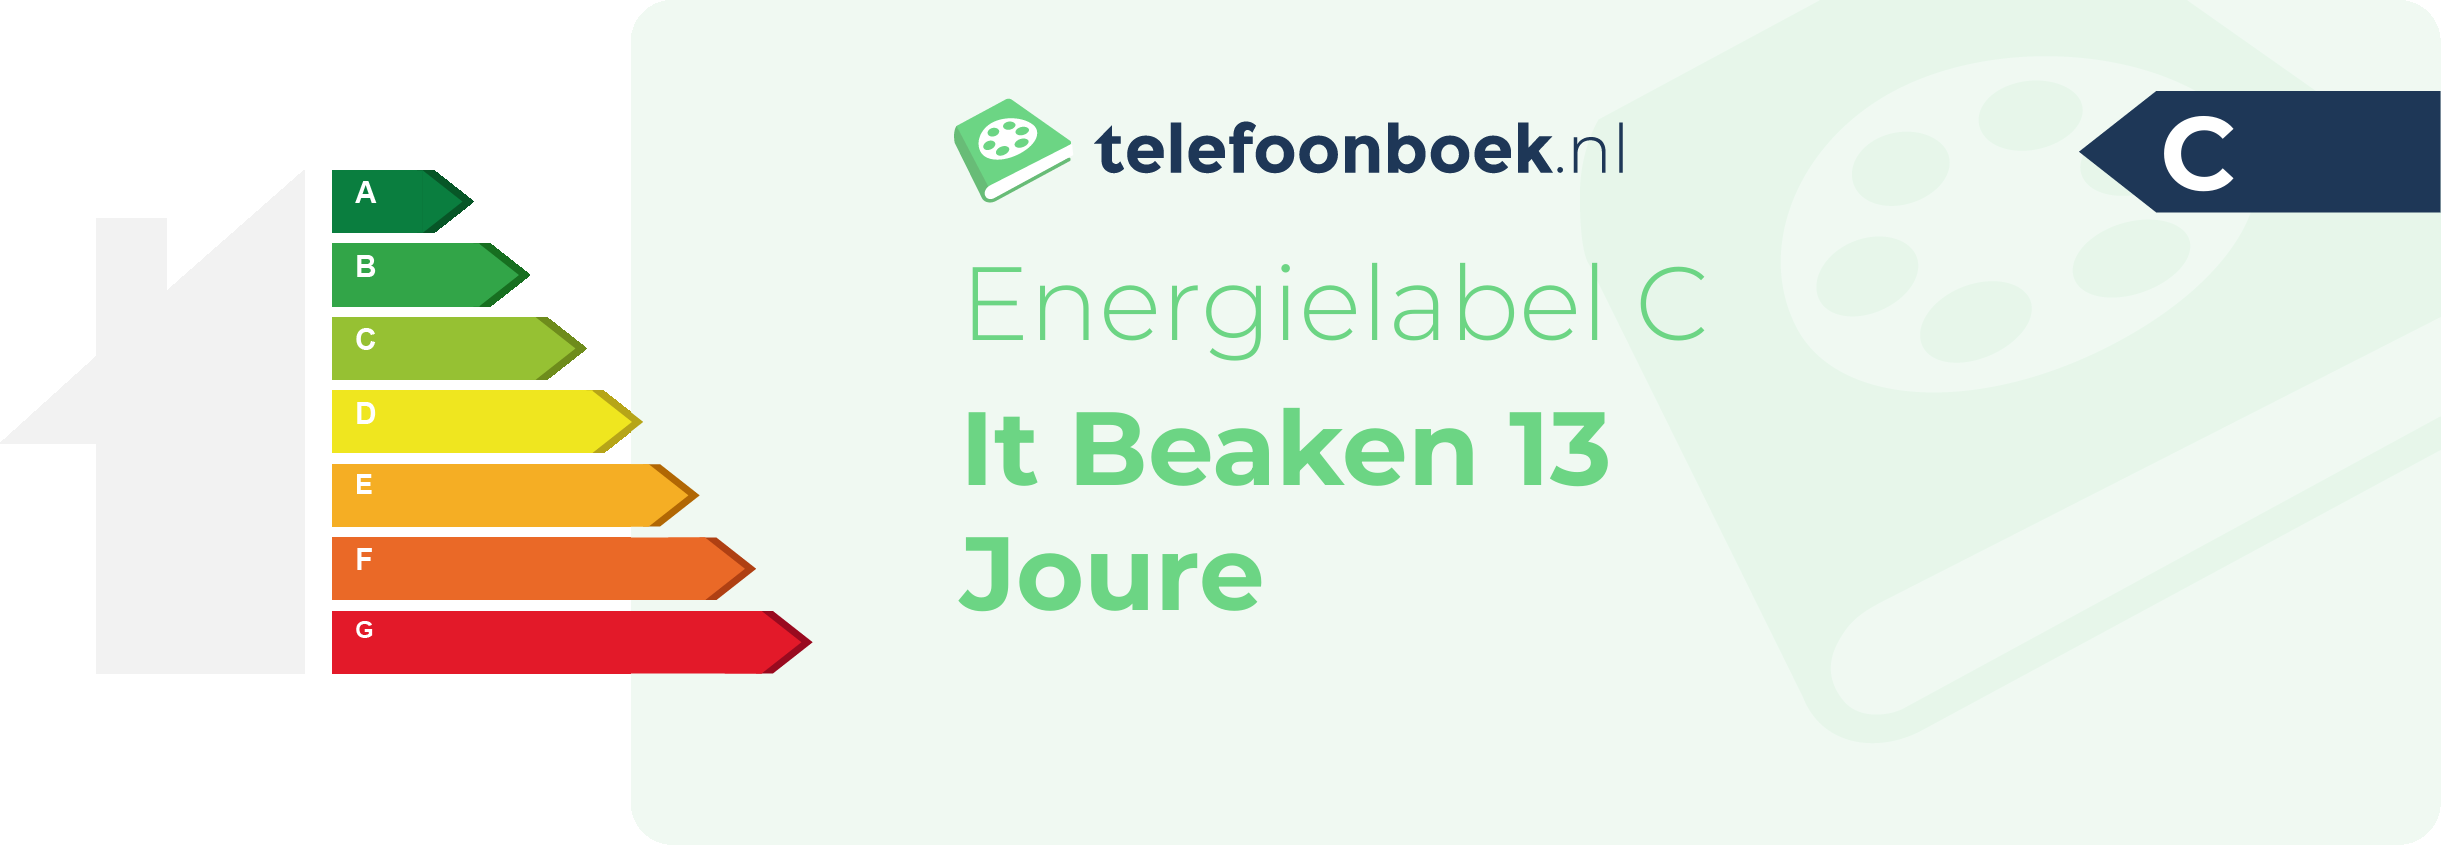 Energielabel It Beaken 13 Joure